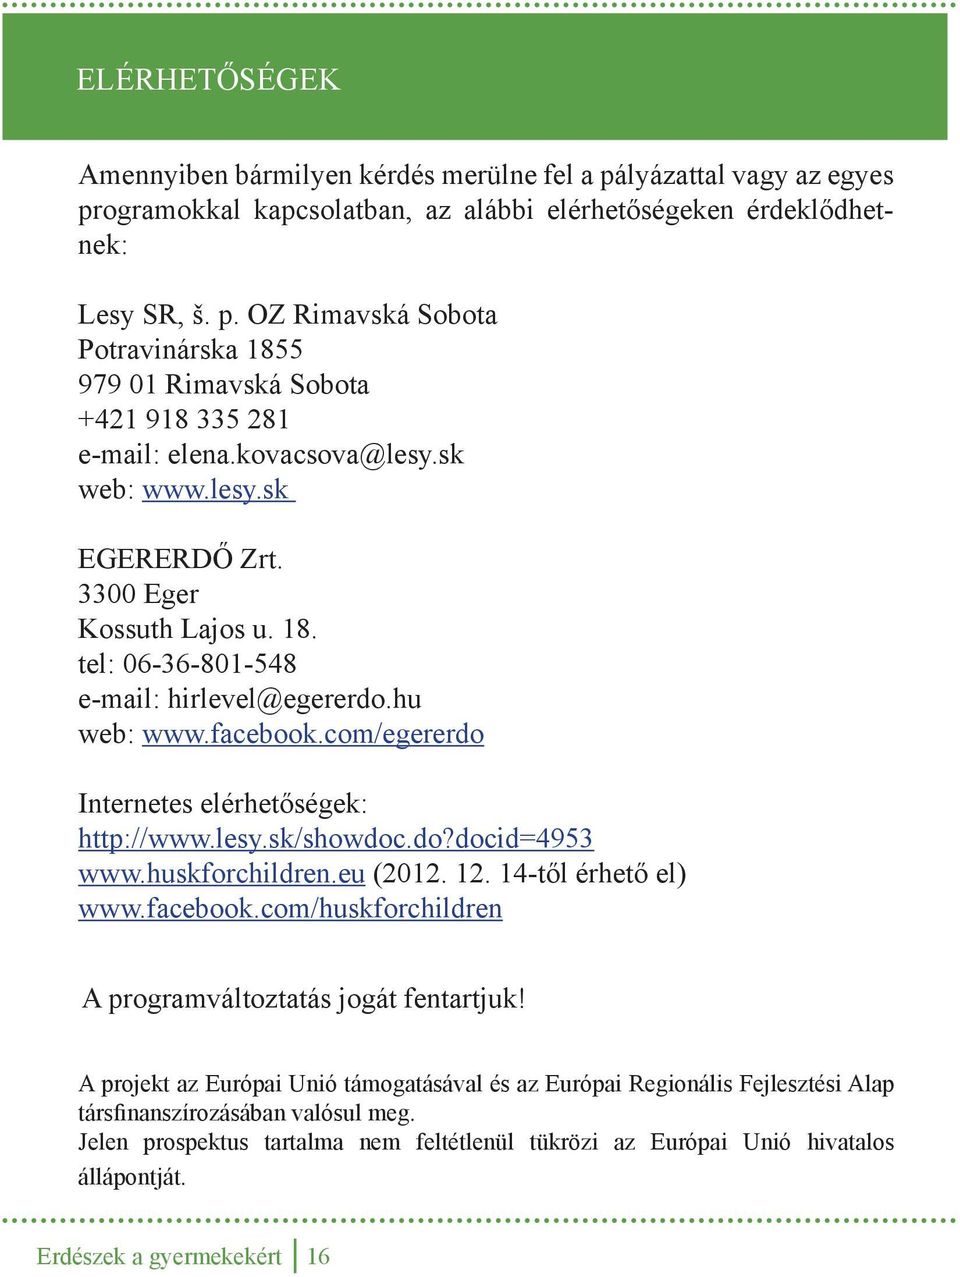 lesy.sk/showdoc.do?docid=4953 www.huskforchildren.eu (2012. 12. 14-től érhető el) www.facebook.com/huskforchildren A programváltoztatás jogát fentartjuk!